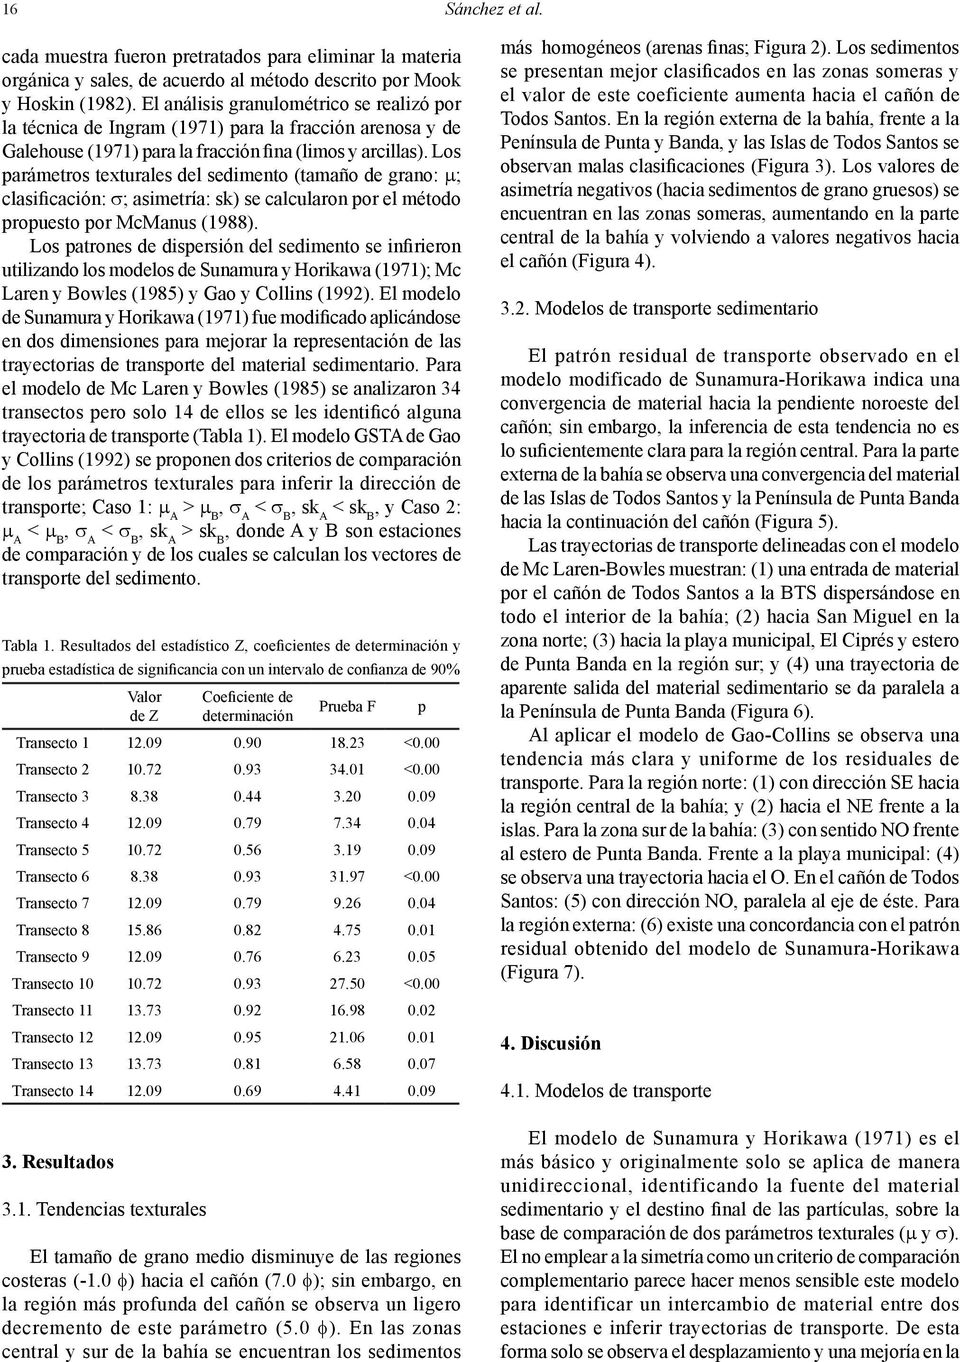 Los parámetros texturales del sedimento (tamaño de grano: m; clasificación: s; asimetría: sk) se calcularon por el método propuesto por McManus (1988).